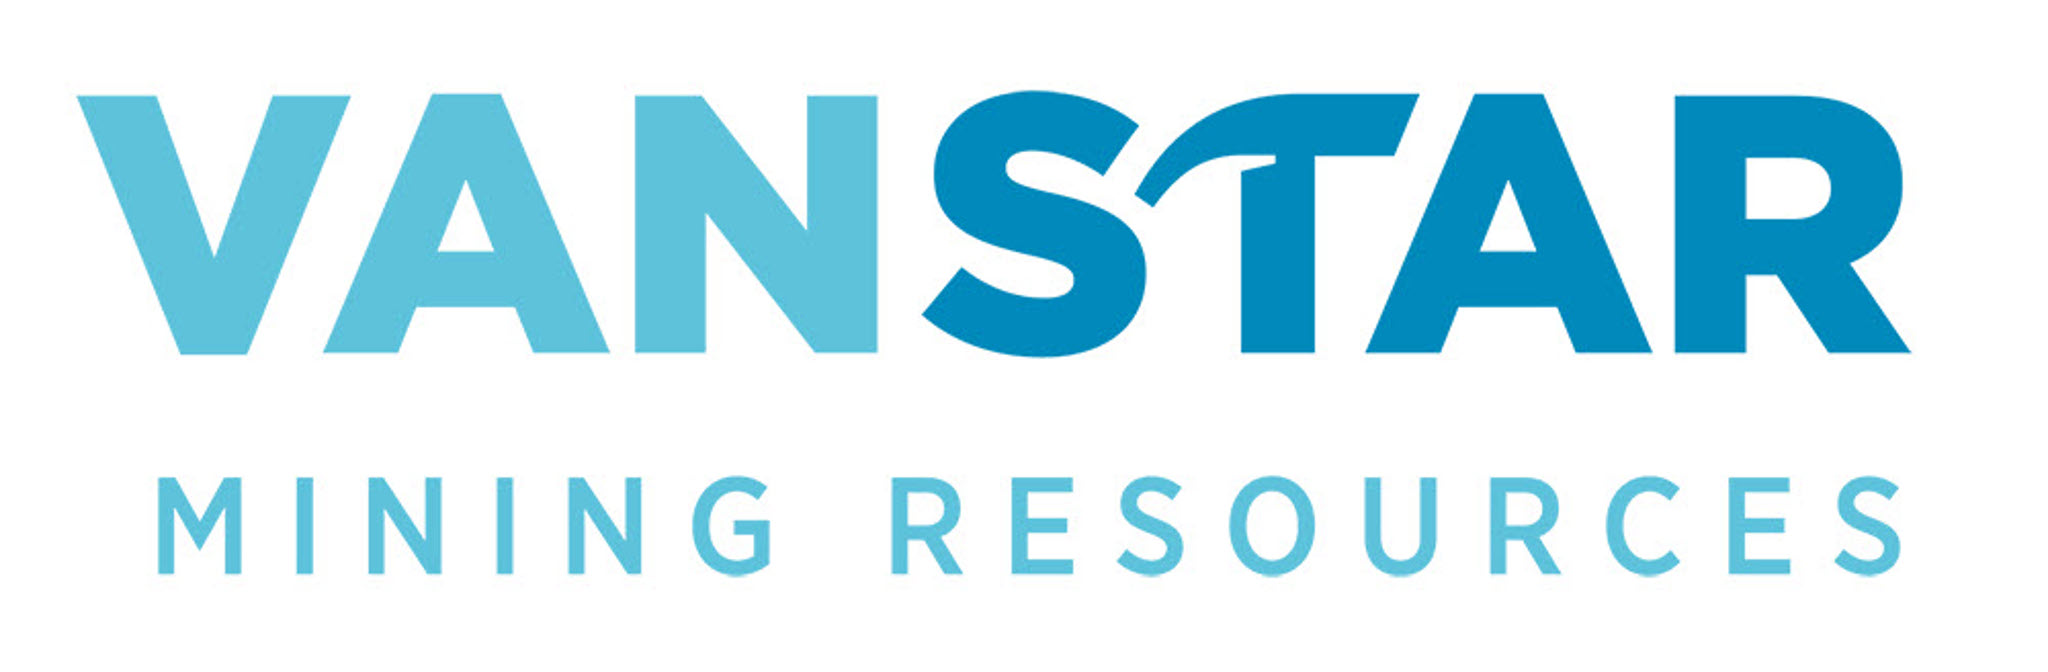 Vanstar Resource is a client of Natrinova Capital Inc.